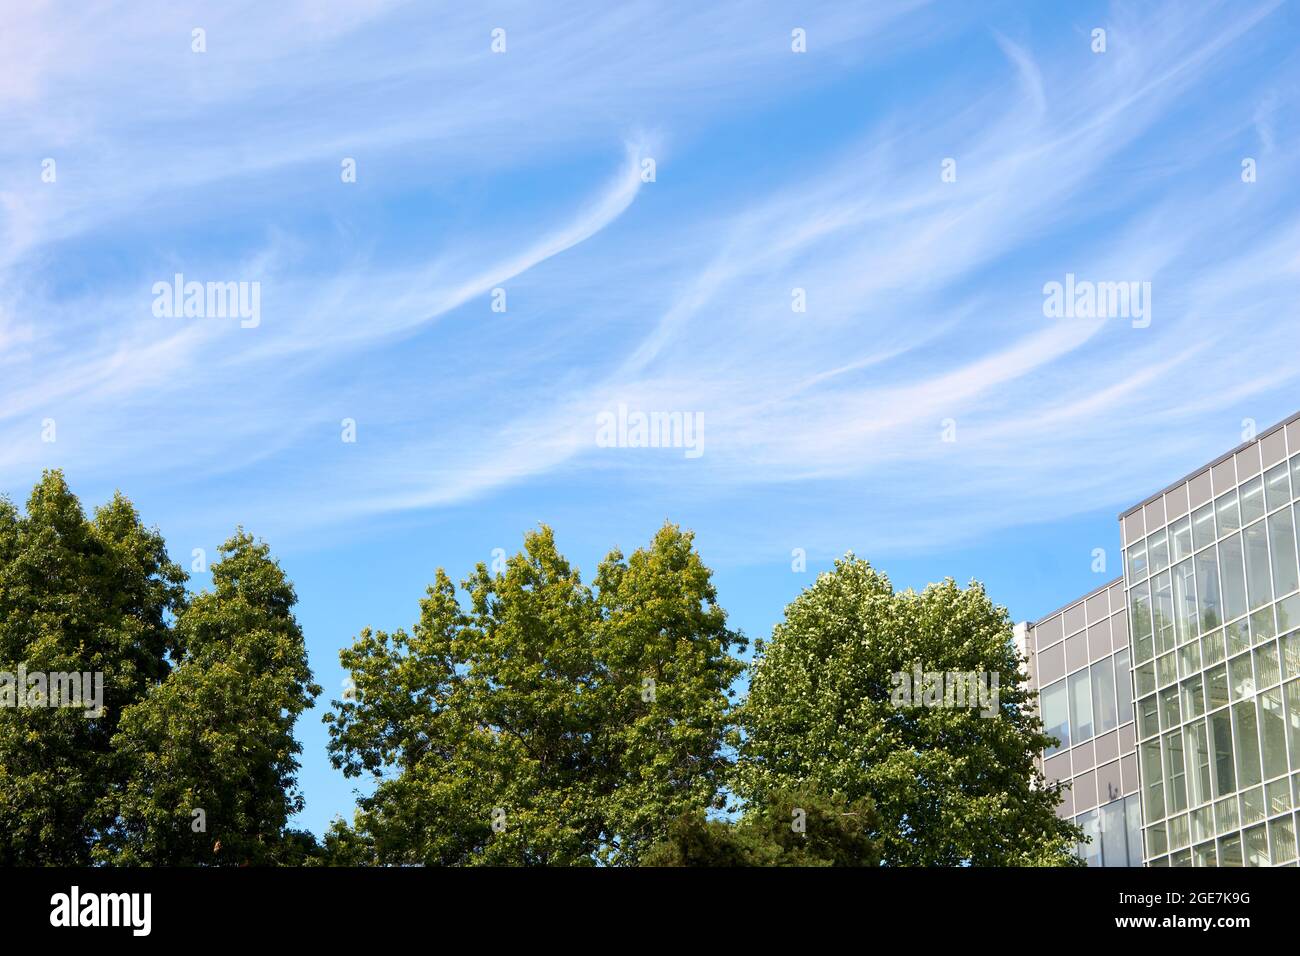 Nubes de cirrus blancas o colas de yeguas en un cielo azul claro, árboles y edificio moderno debajo Foto de stock